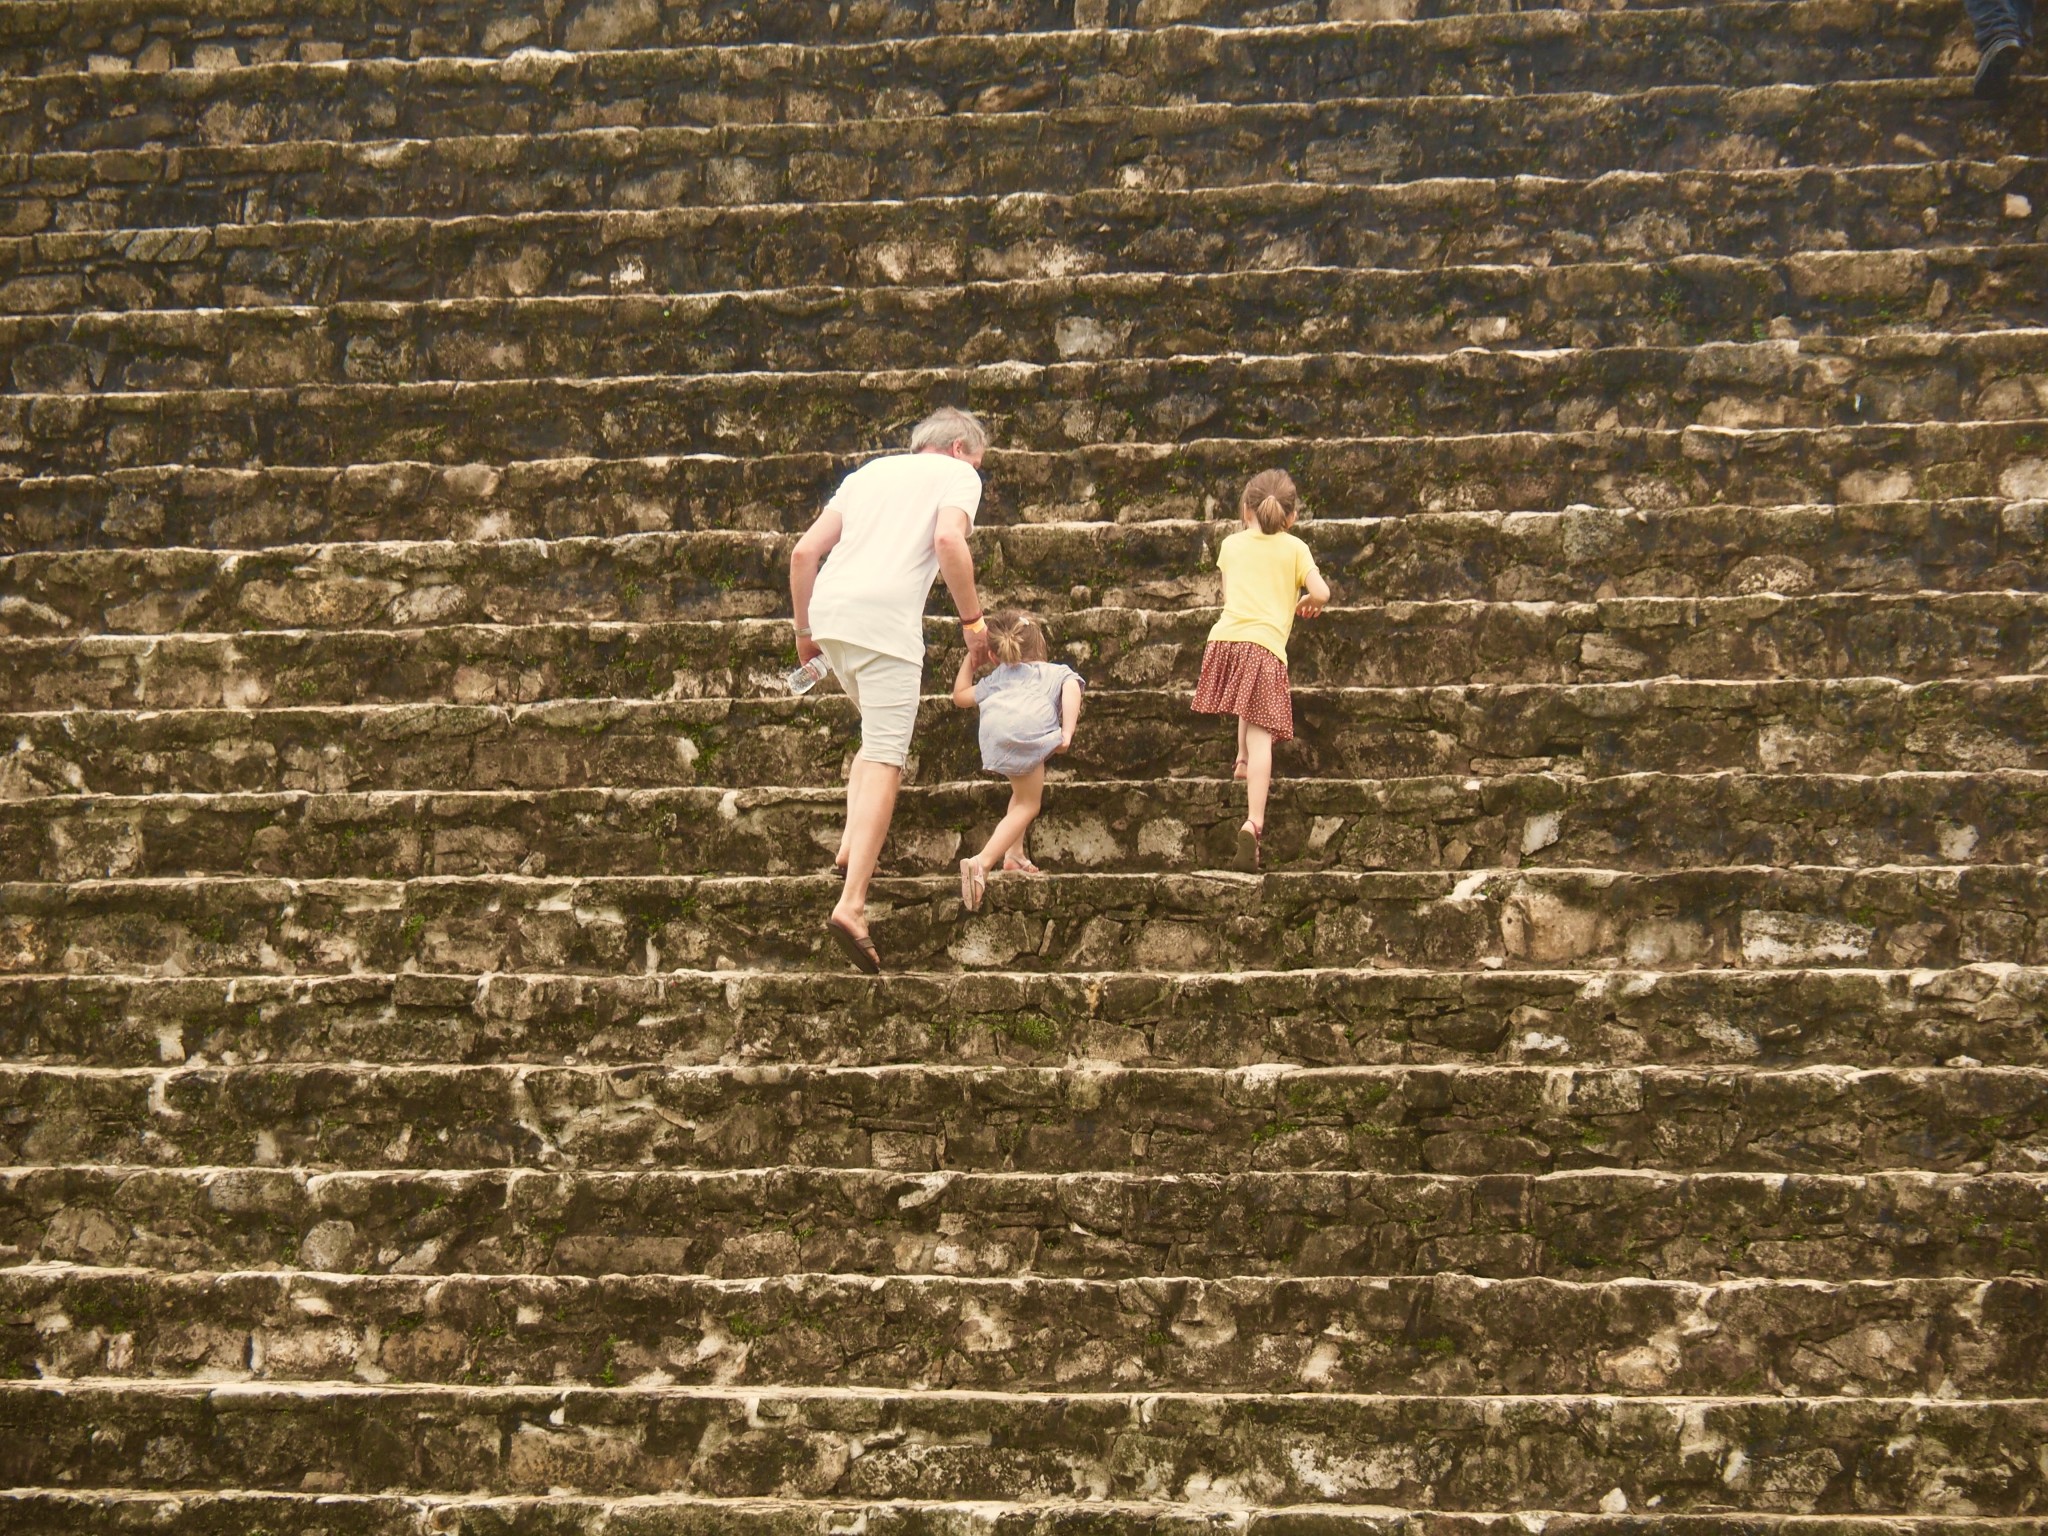 Den "Palast" von Palenque darf man erklimmen